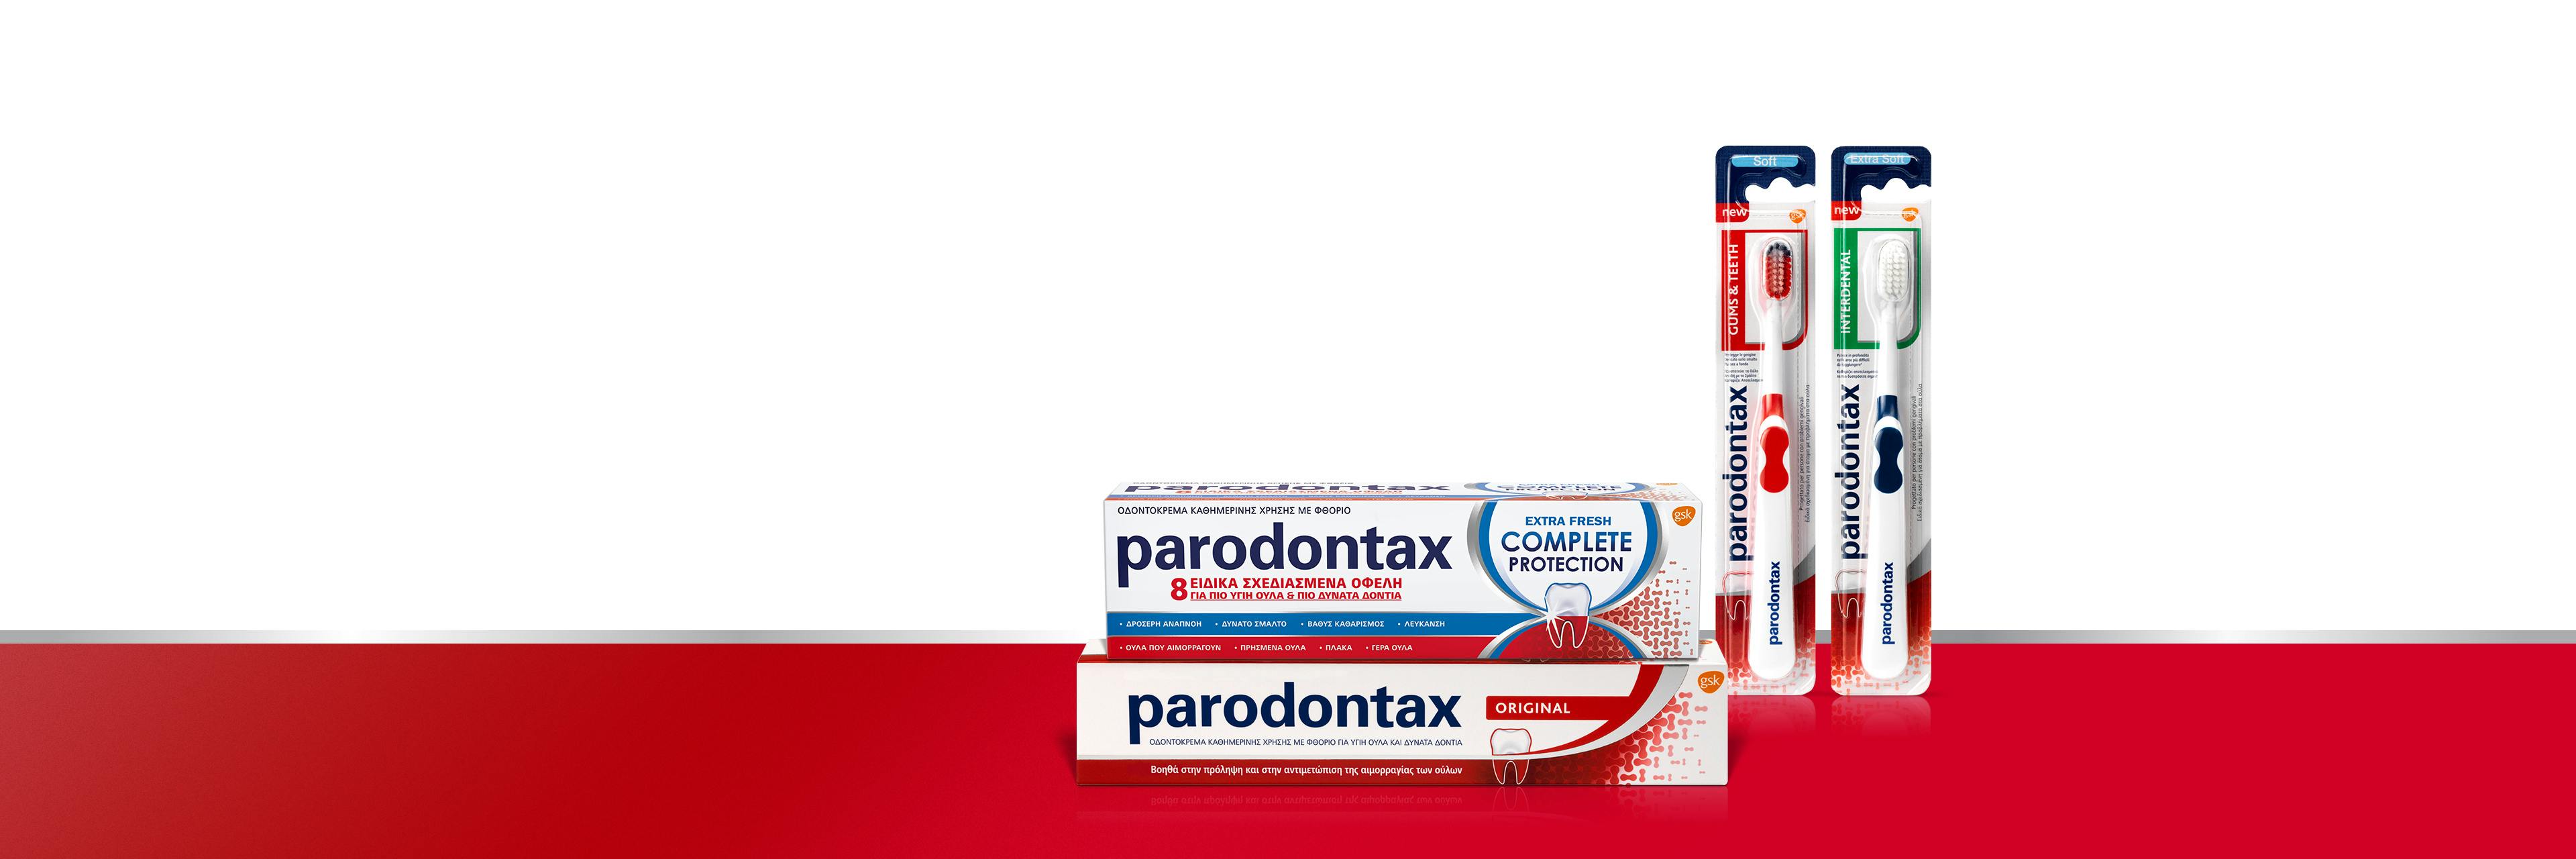 Προϊόντα Parodontax καθημερινής προστασίας για τα ούλα